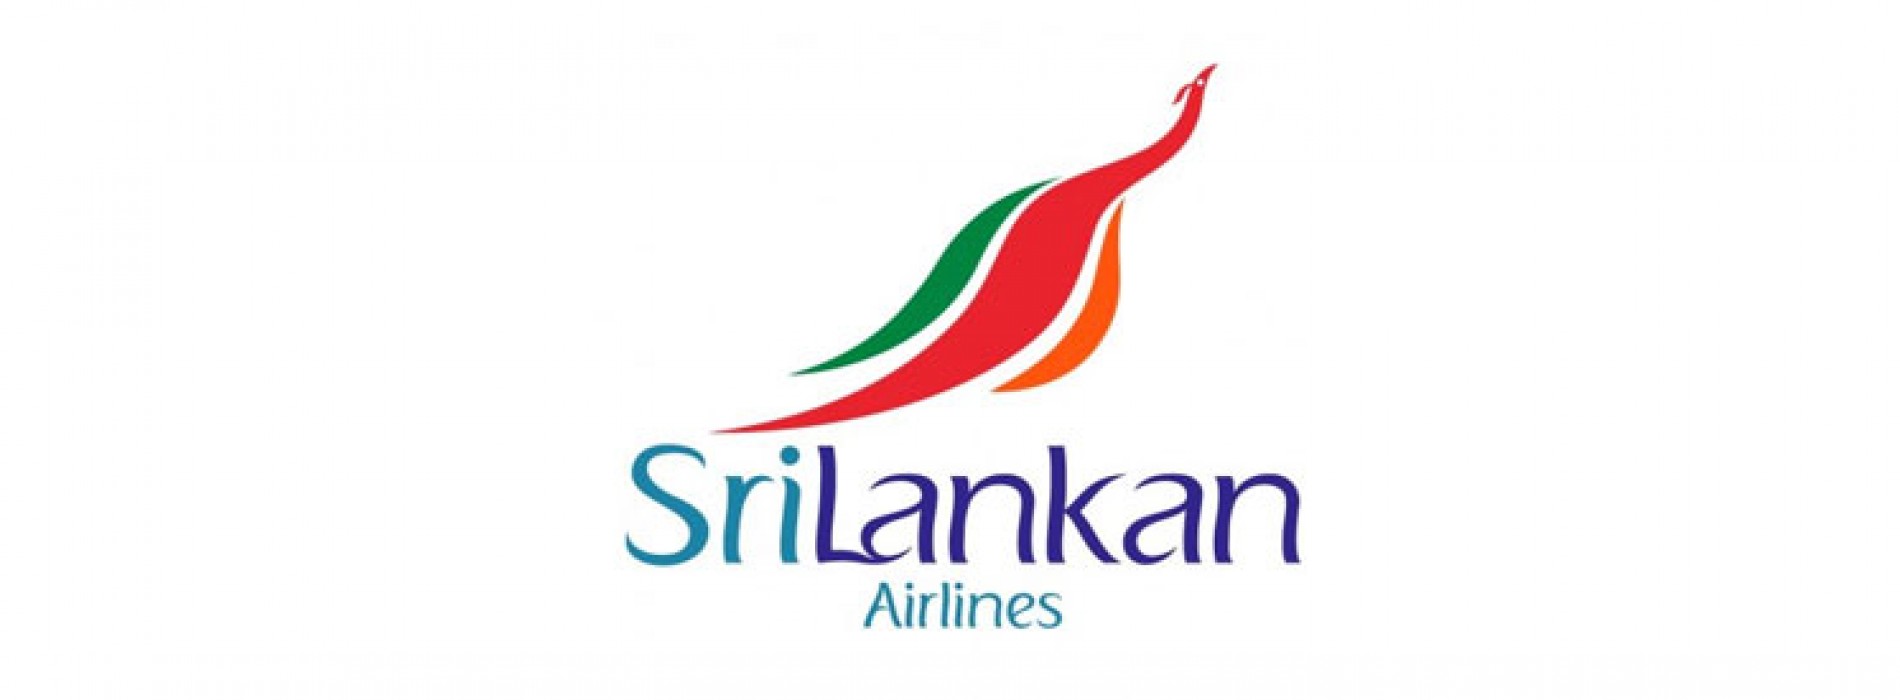 SriLankan Airlines Progresses with Fleet Renewal Plan